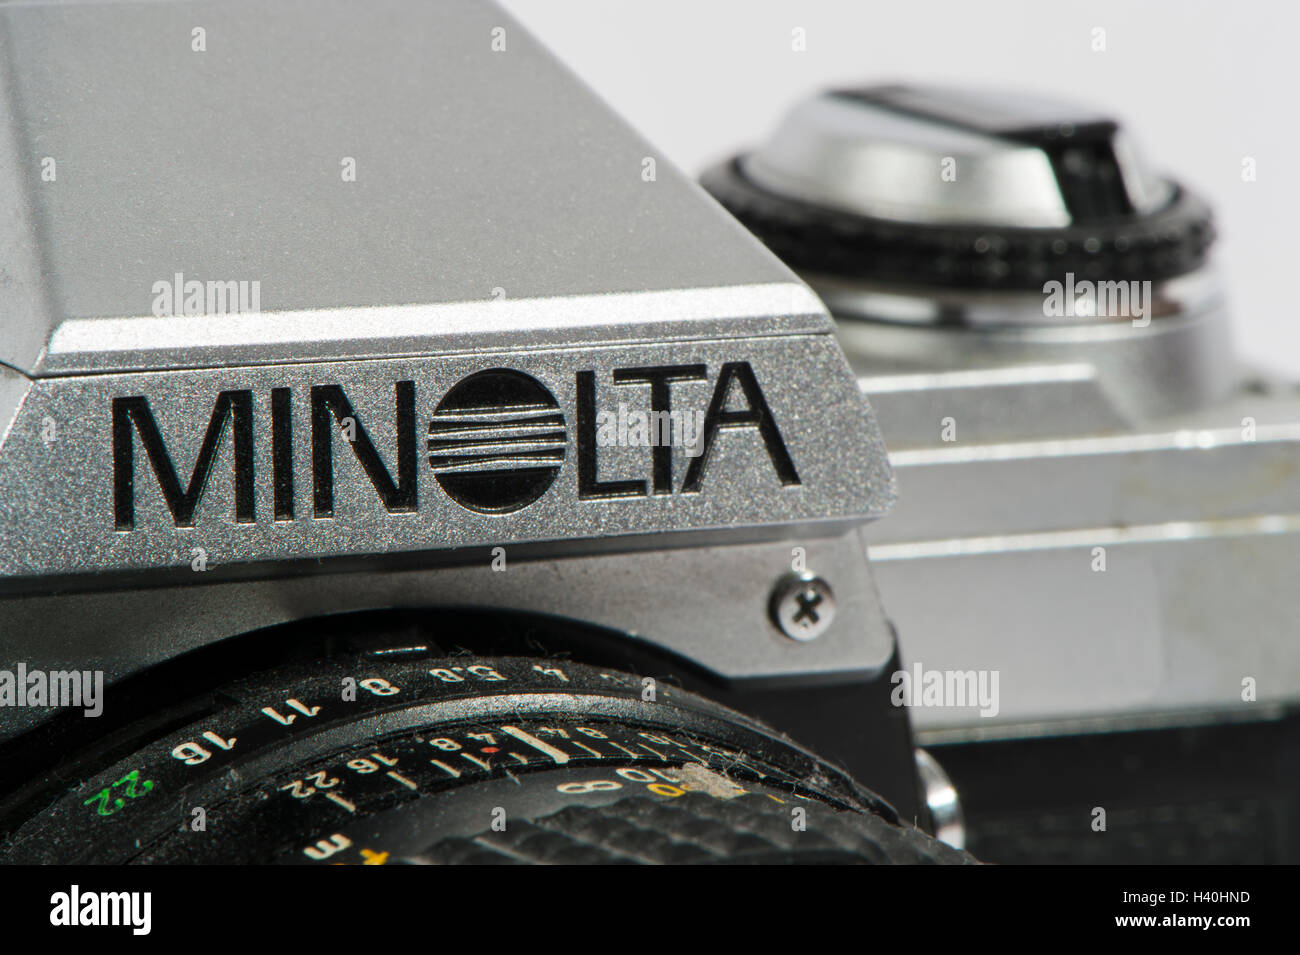 Dettaglio dei classici degli anni ottanta, Minolta X-300 - pellicola 35mm, fotocamera reflex con un 50mm Minolta lente primaria, visto contro uno sfondo bianco. Foto Stock